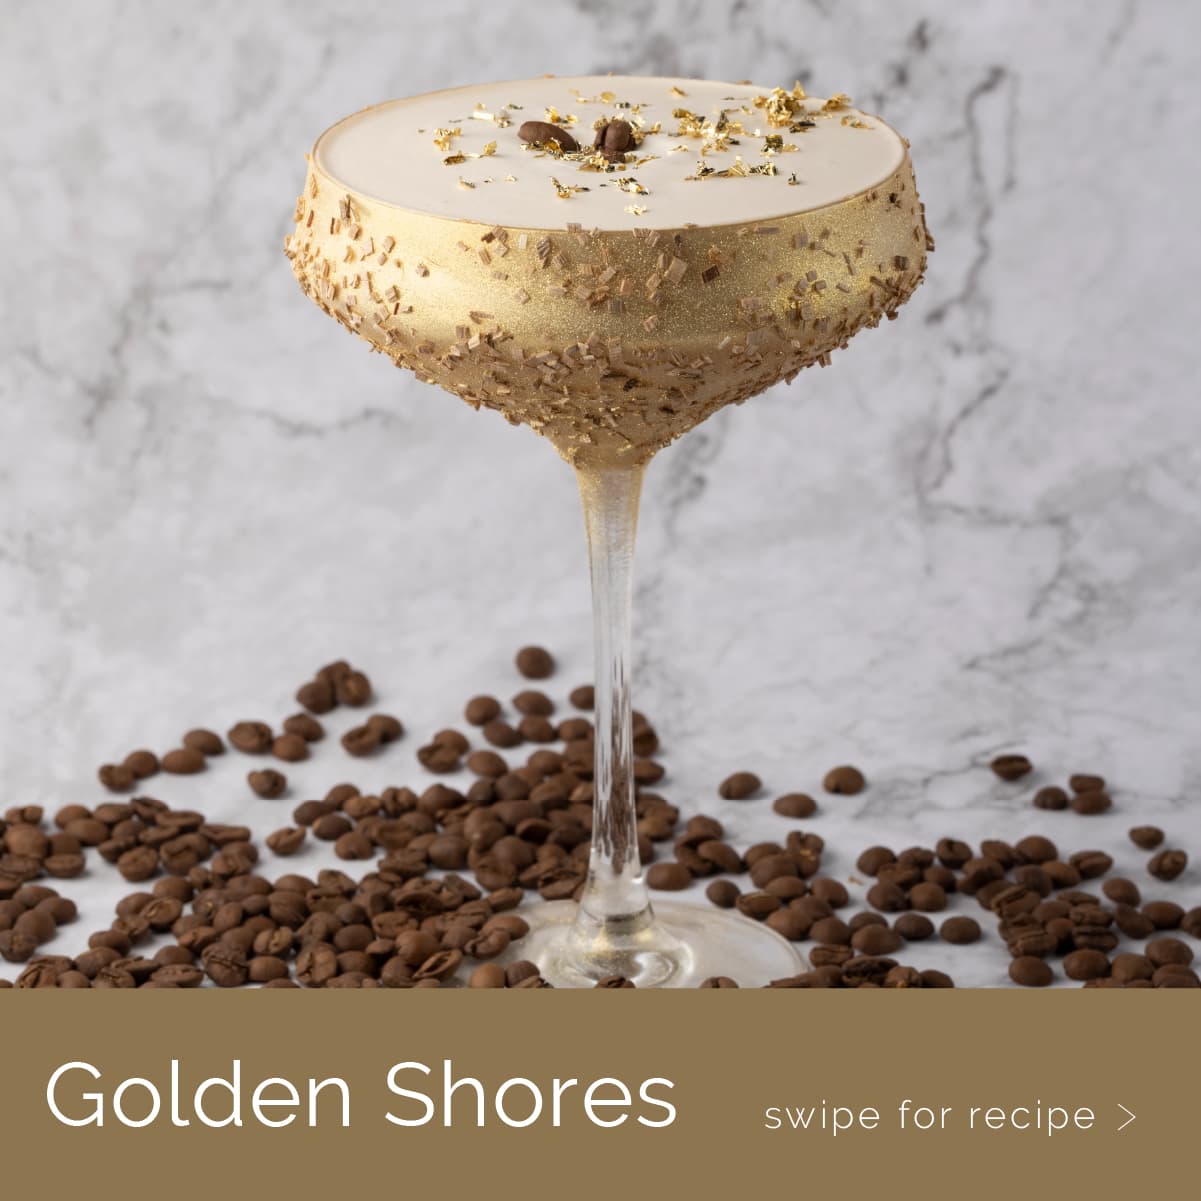 A Golden Shores cocktail